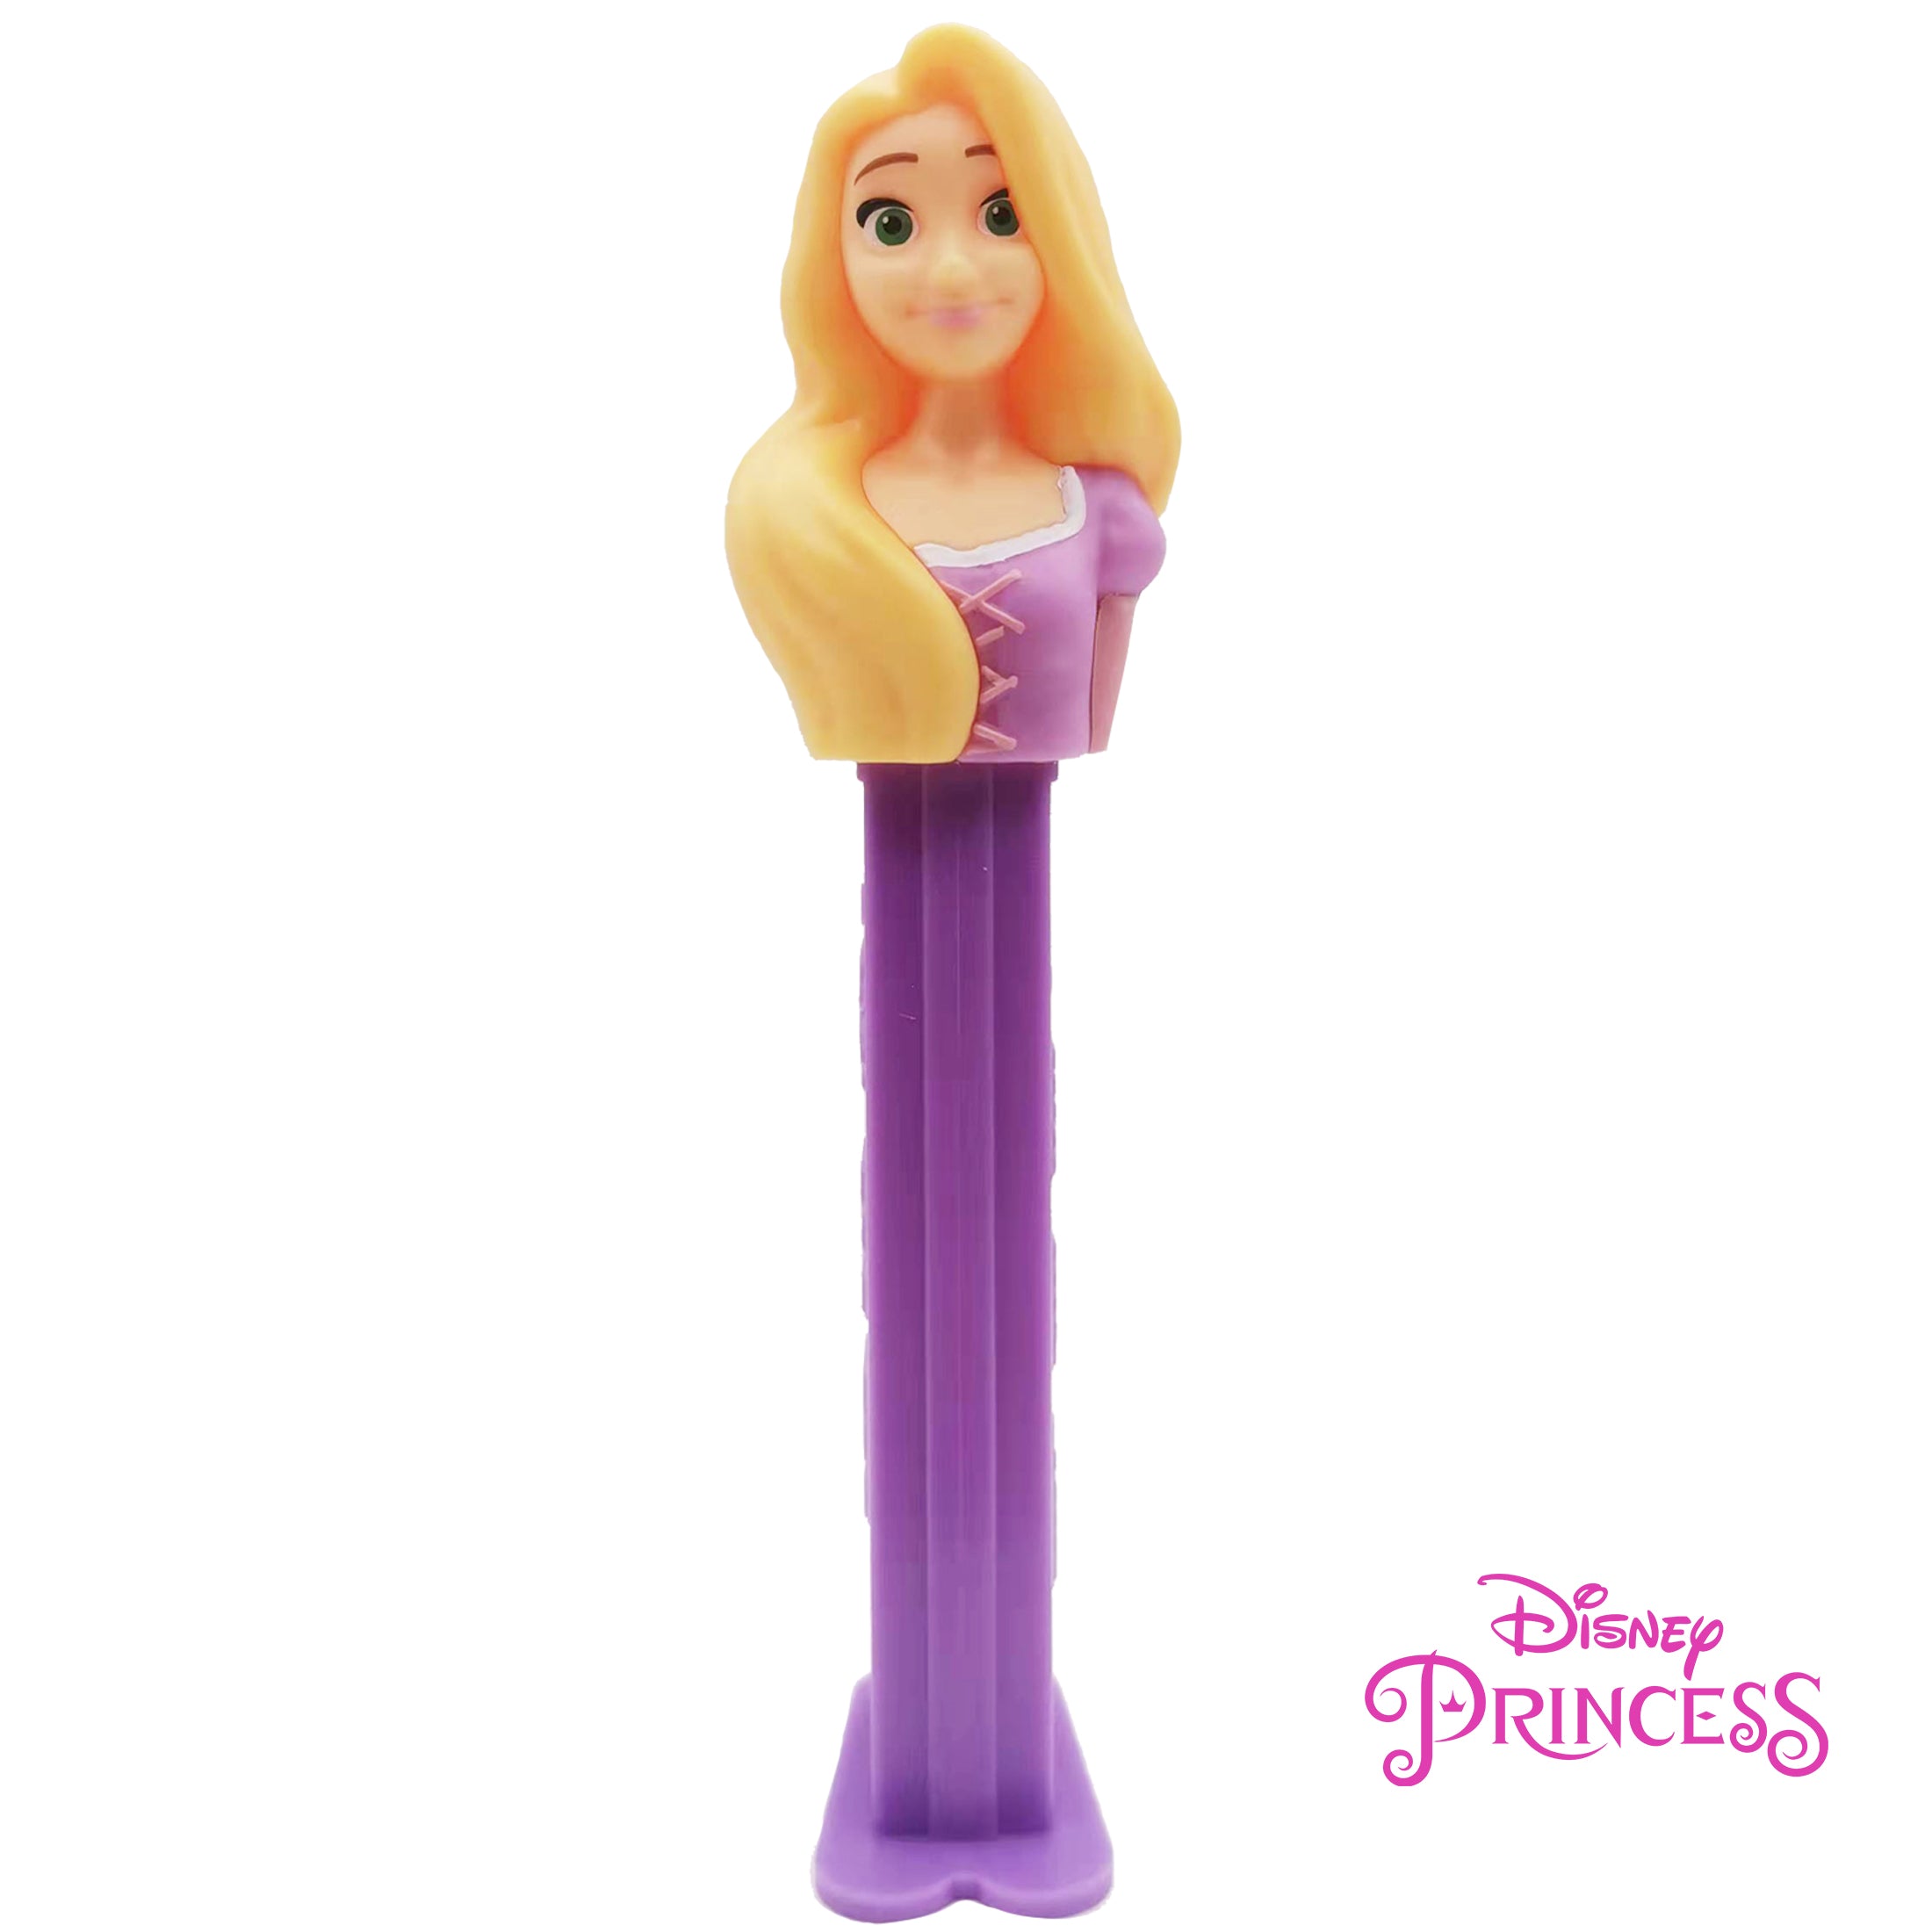 Pez Princesse Disney - Pochette surprise, calendrier de l'Avent